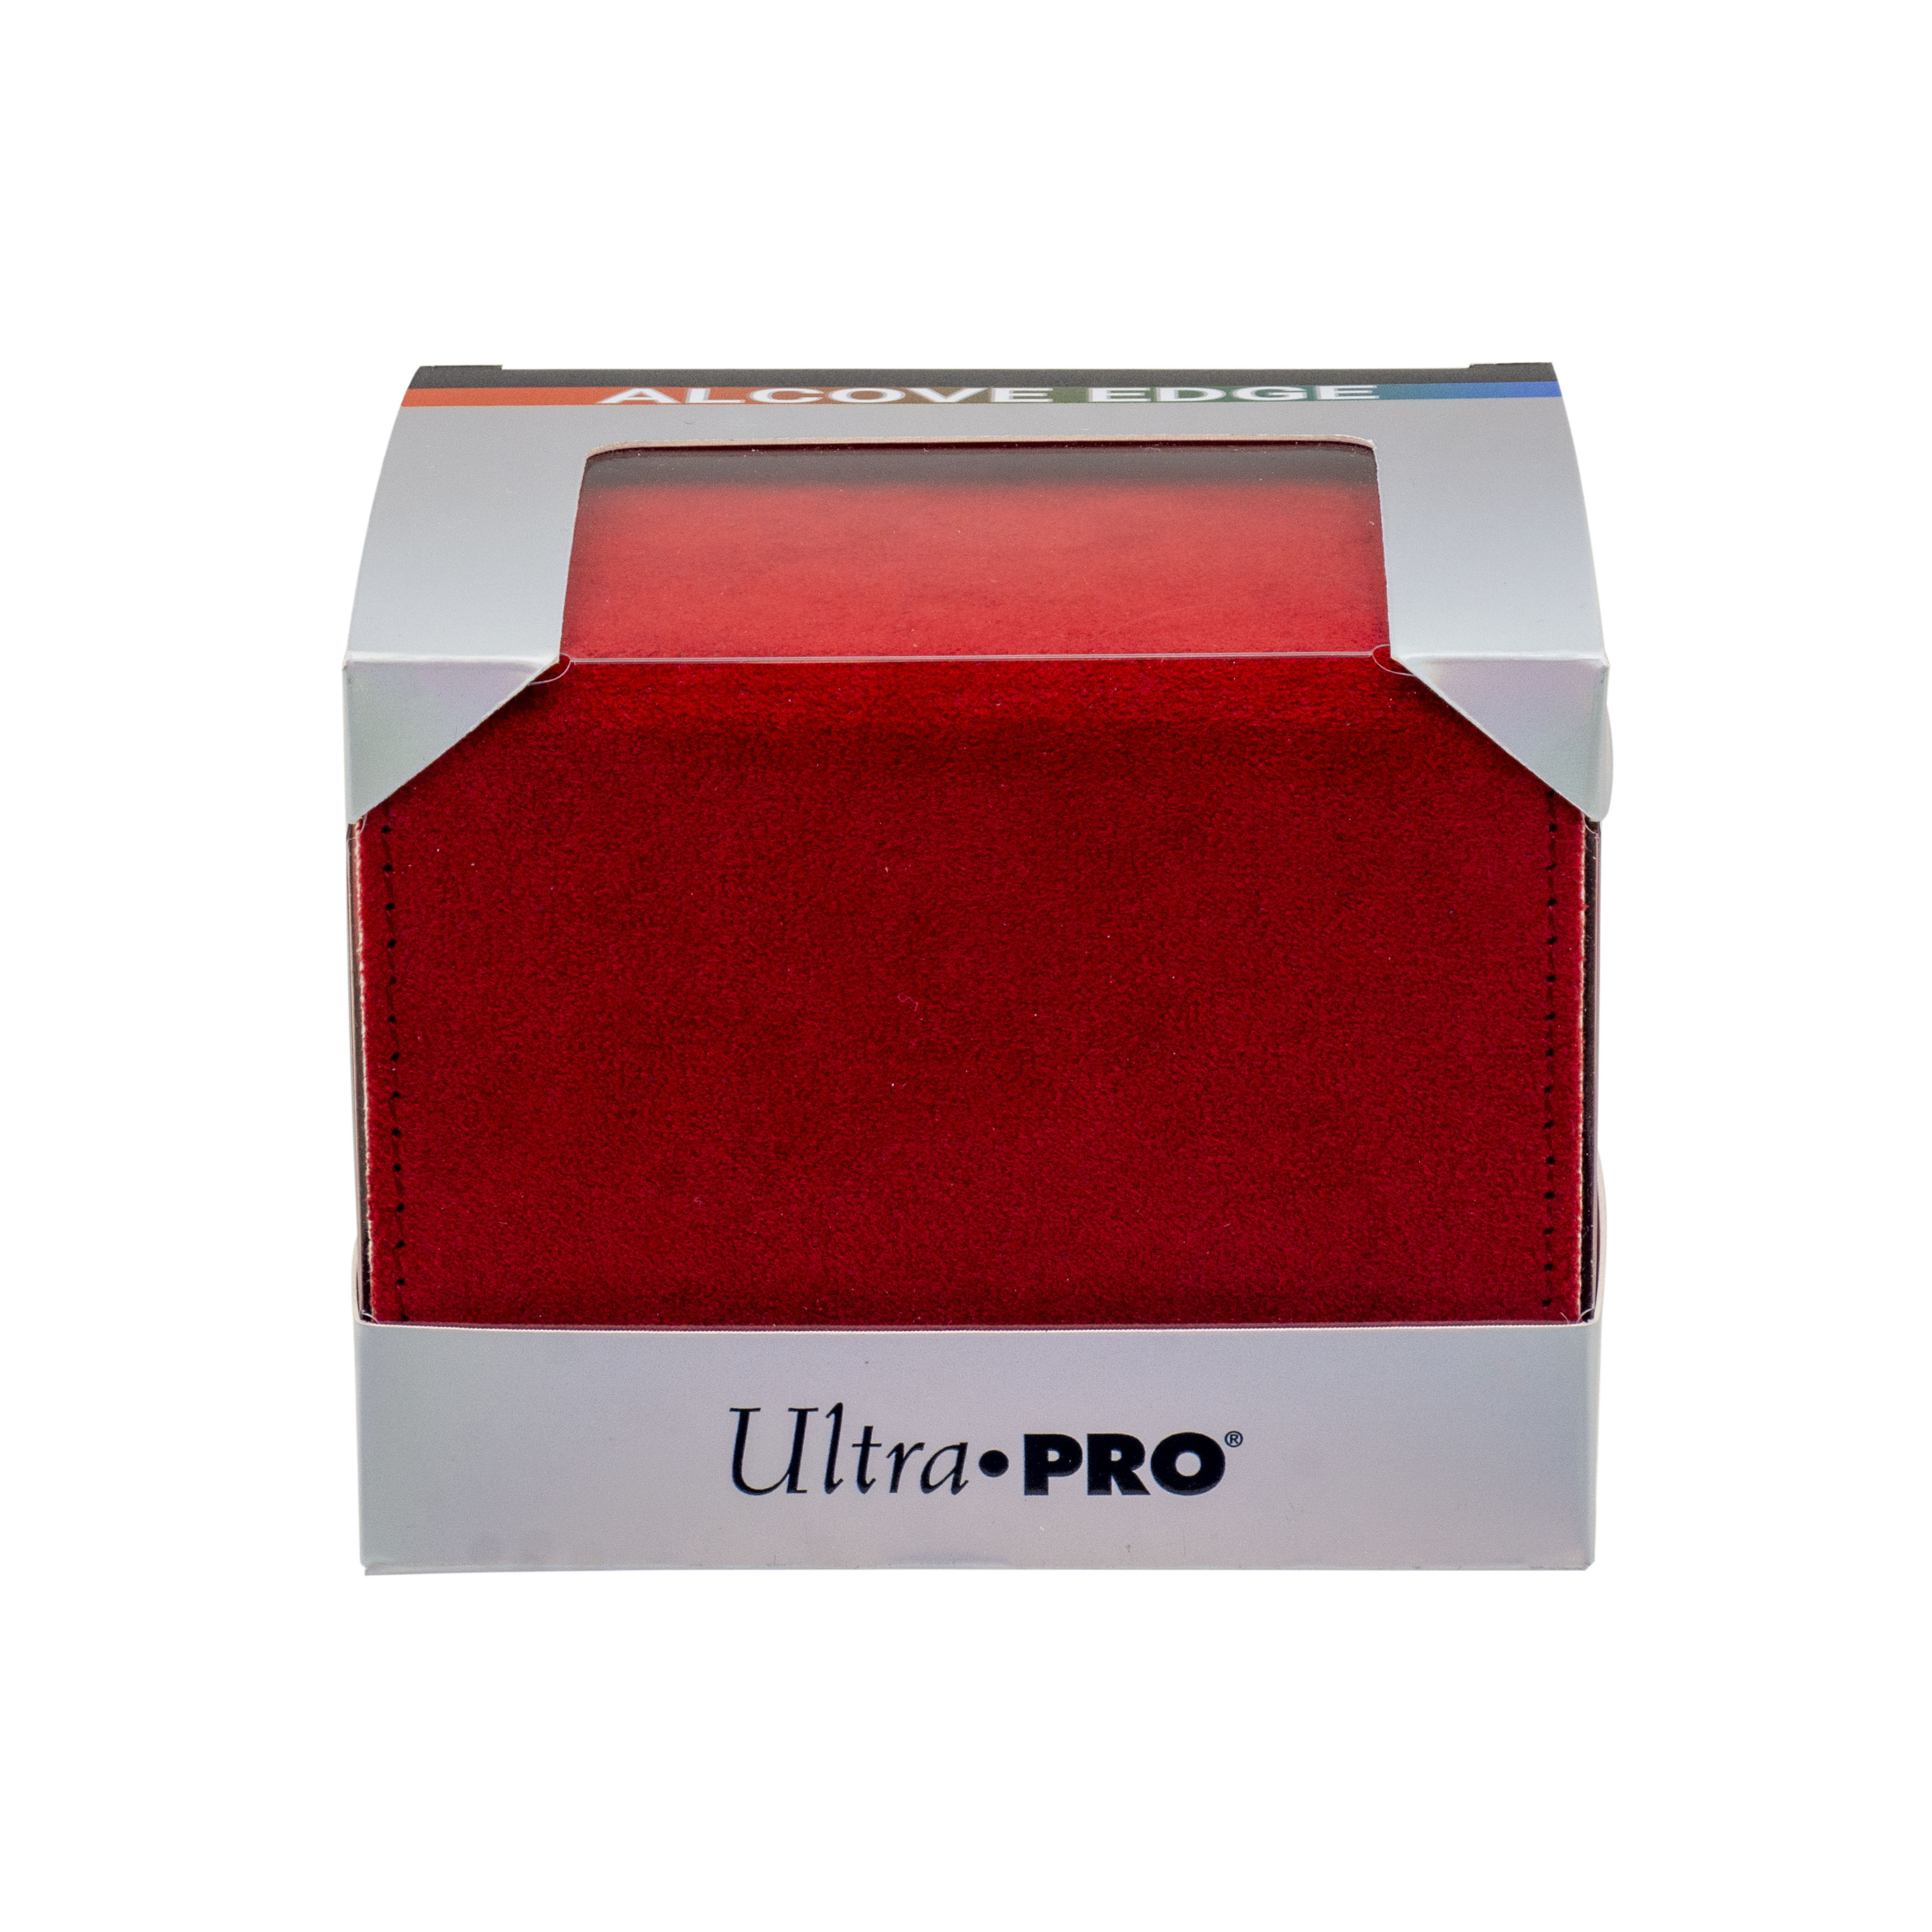 Ultra Pro: Alcove Edge Deluxe Deck Box: Vivid Red 